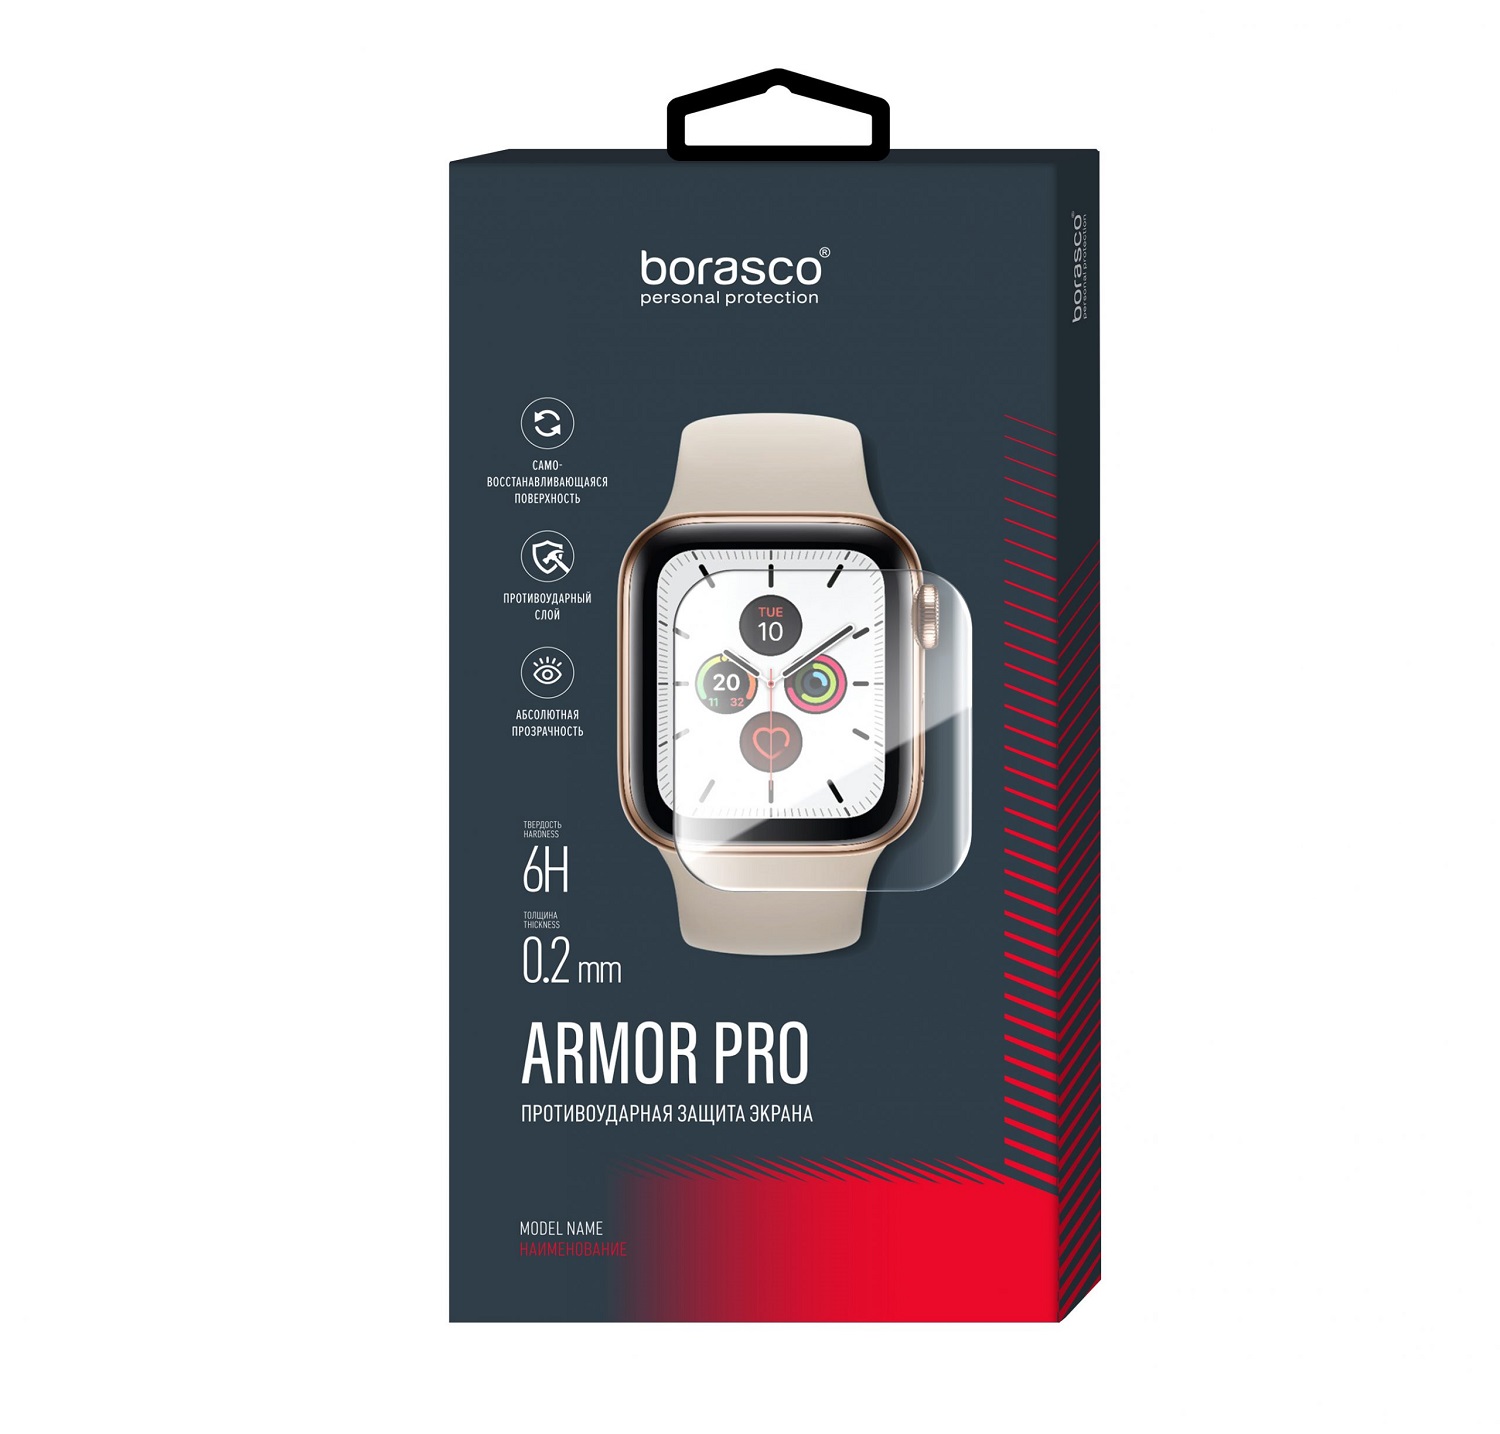 Защита экрана BoraSCO Armor Pro для Honor Band 3 защита экрана borasco armor pro для amazfit pace